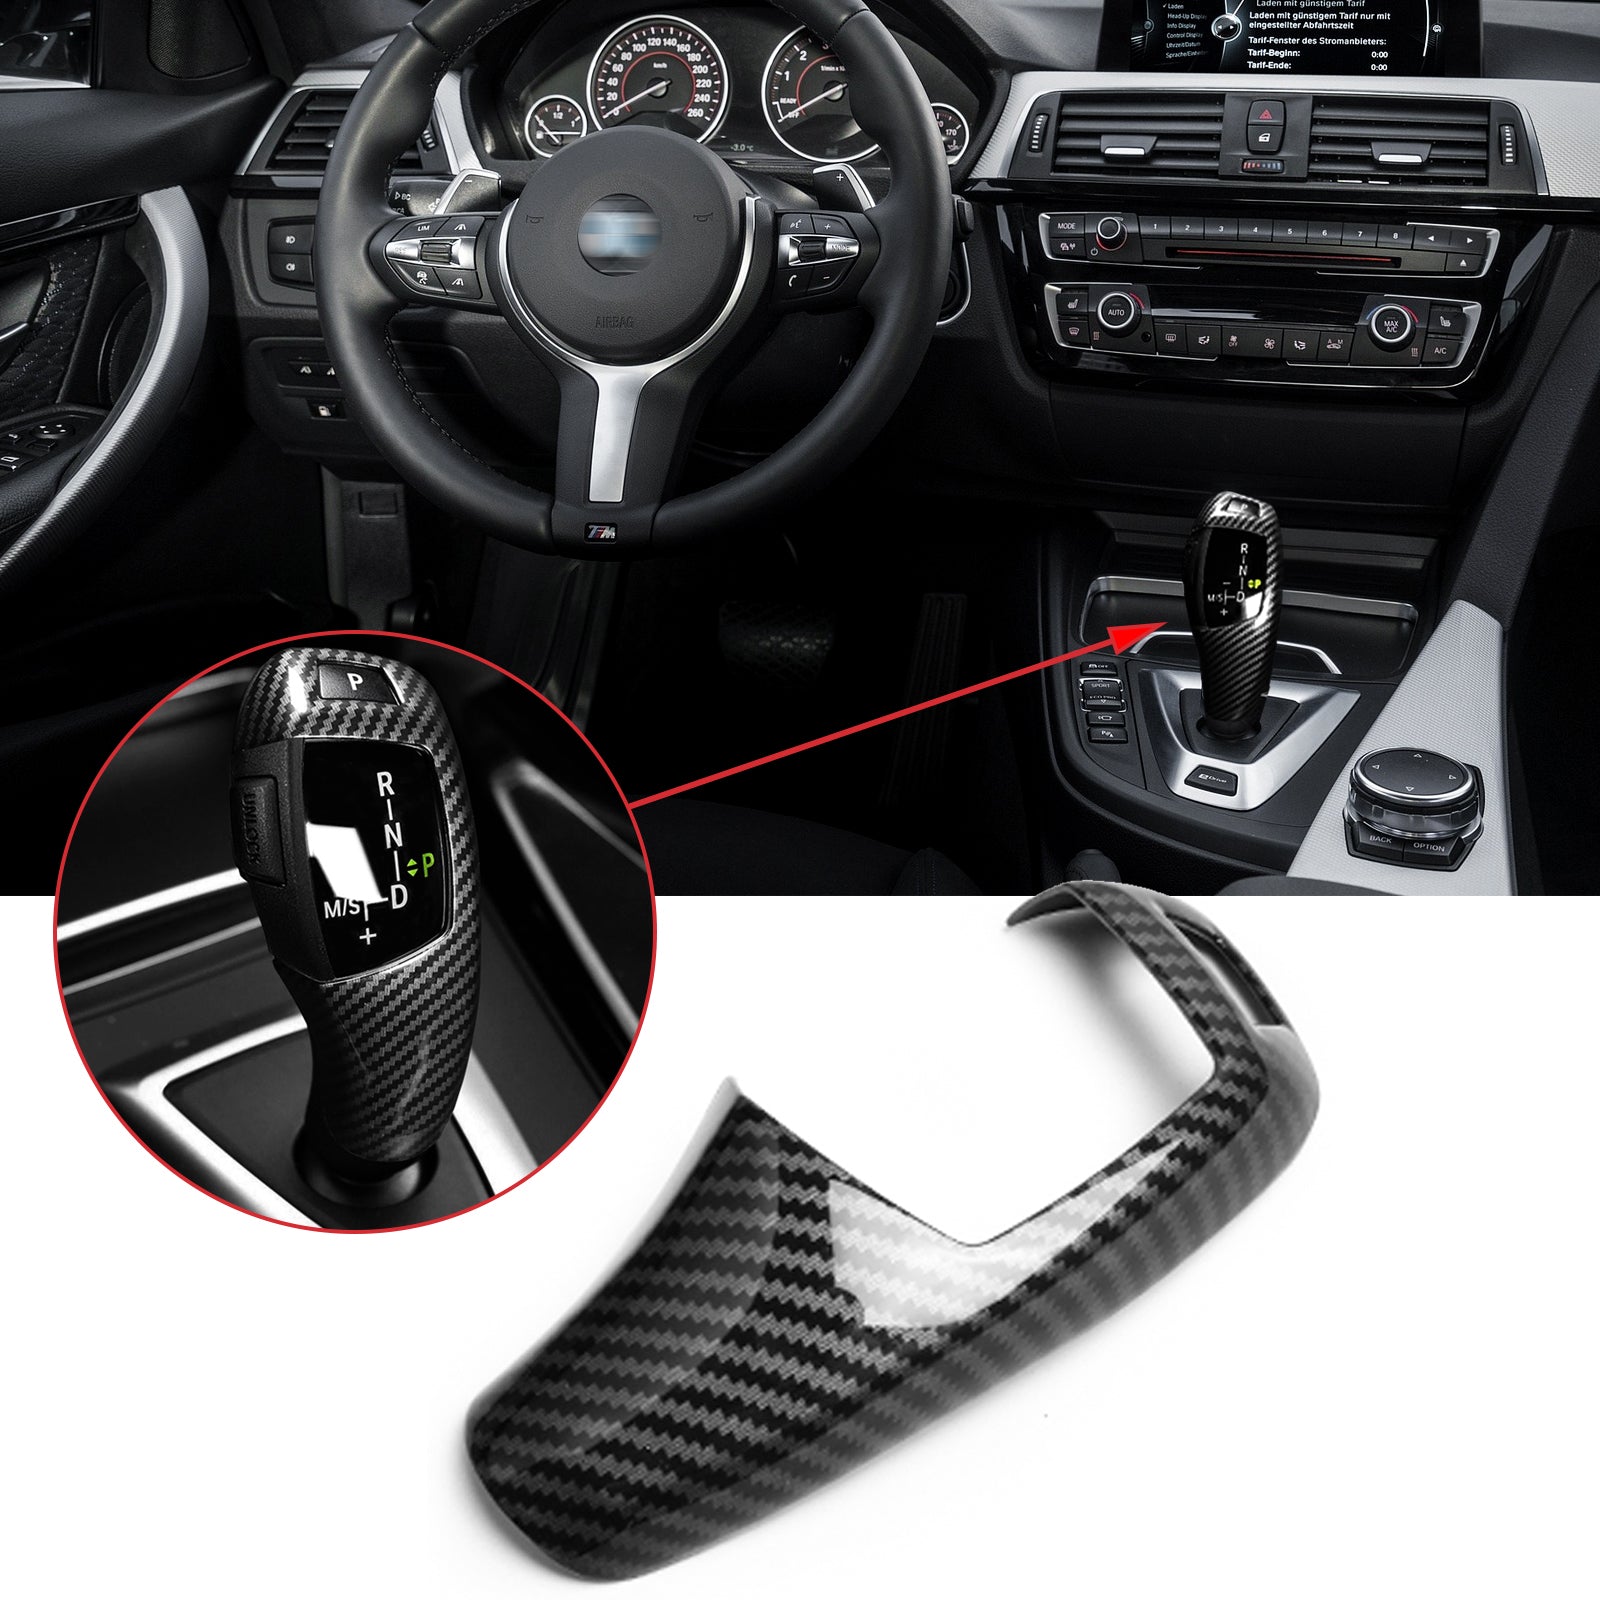 Fit For BMW F10 F11 F30 X3 X5 X6 ABS Car Key Cover Protection Key